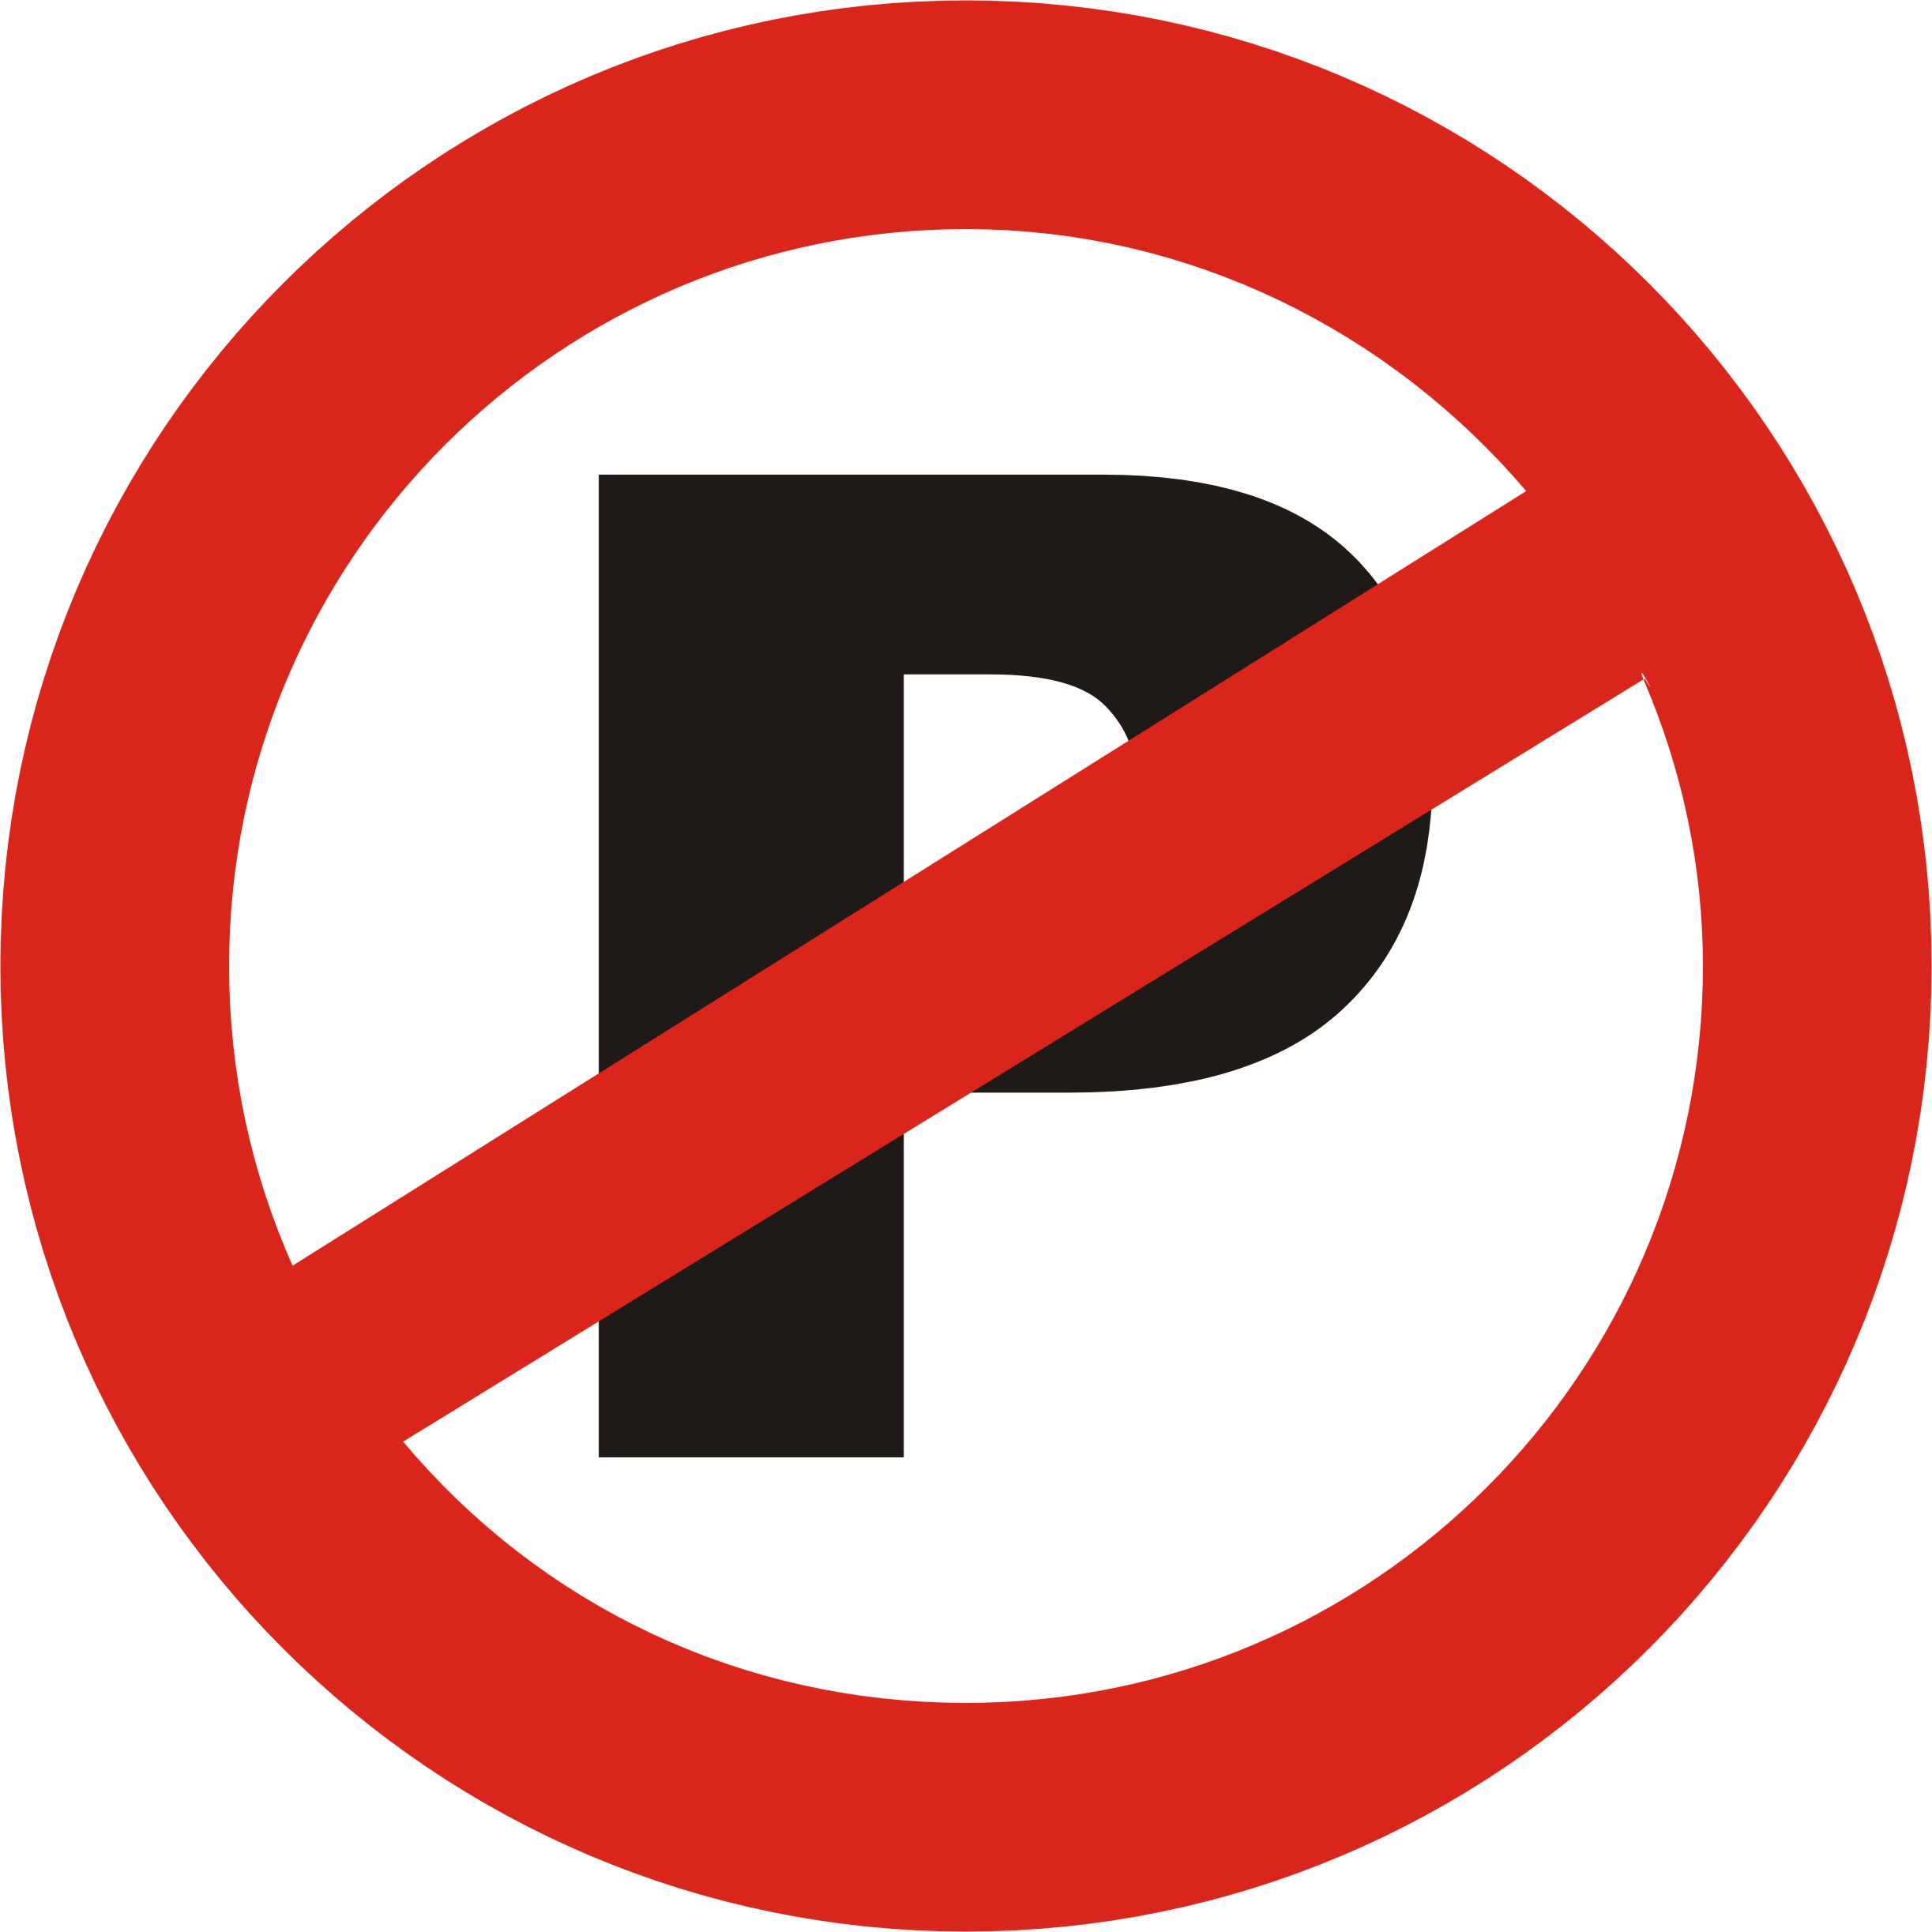 No parking clipart